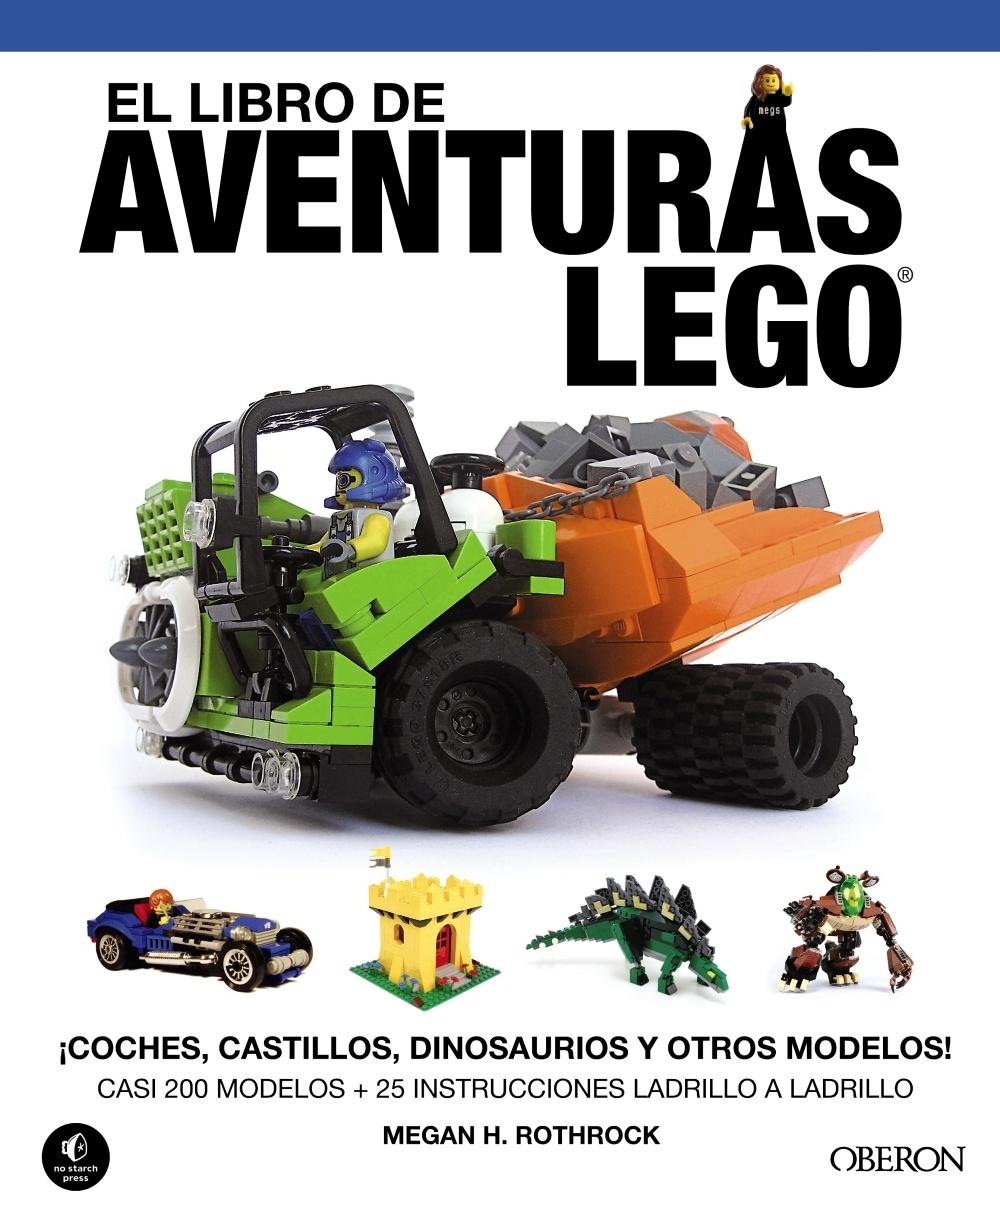 LIBRO DE AVENTURAS LEGO, EL "¡COCHES, CASTILLOS, DI¡COCHES, CASTILLOS, DINOSAURIOS Y OTROS MODELOS!. CASI 200 MODELOS!"